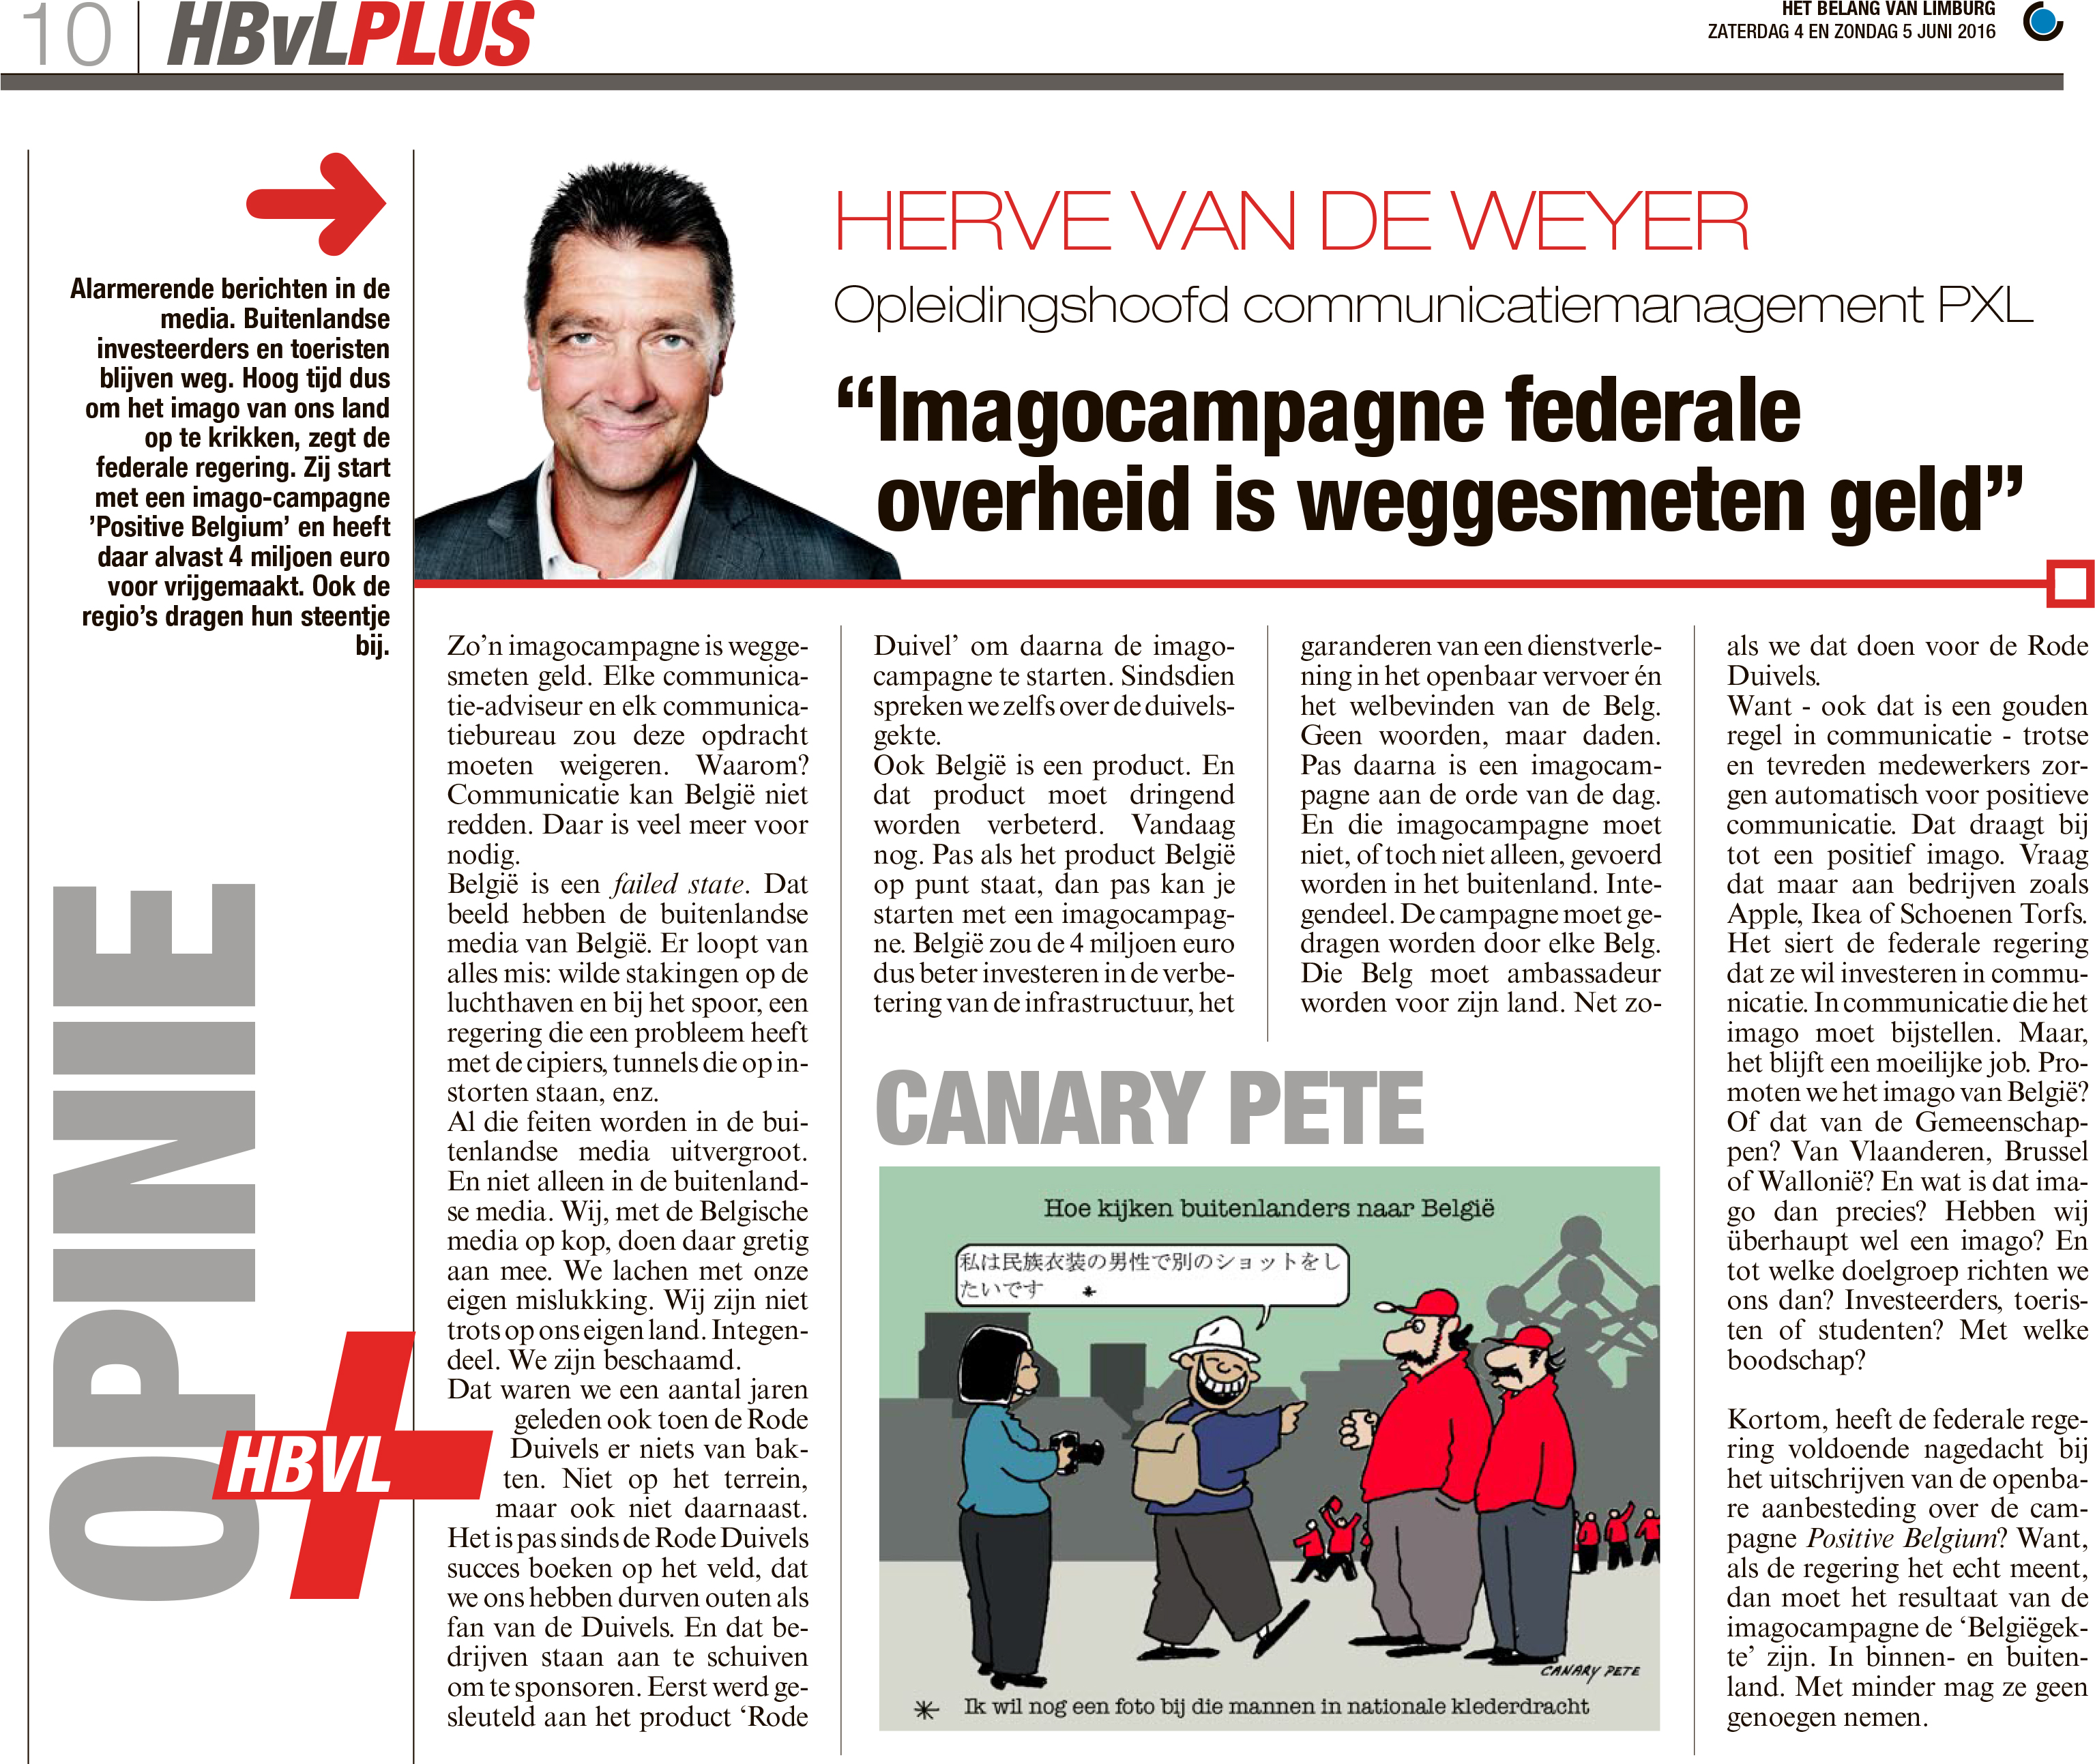 Opiniestuk door Herve Vandeweyer in Het Belang van Limburg